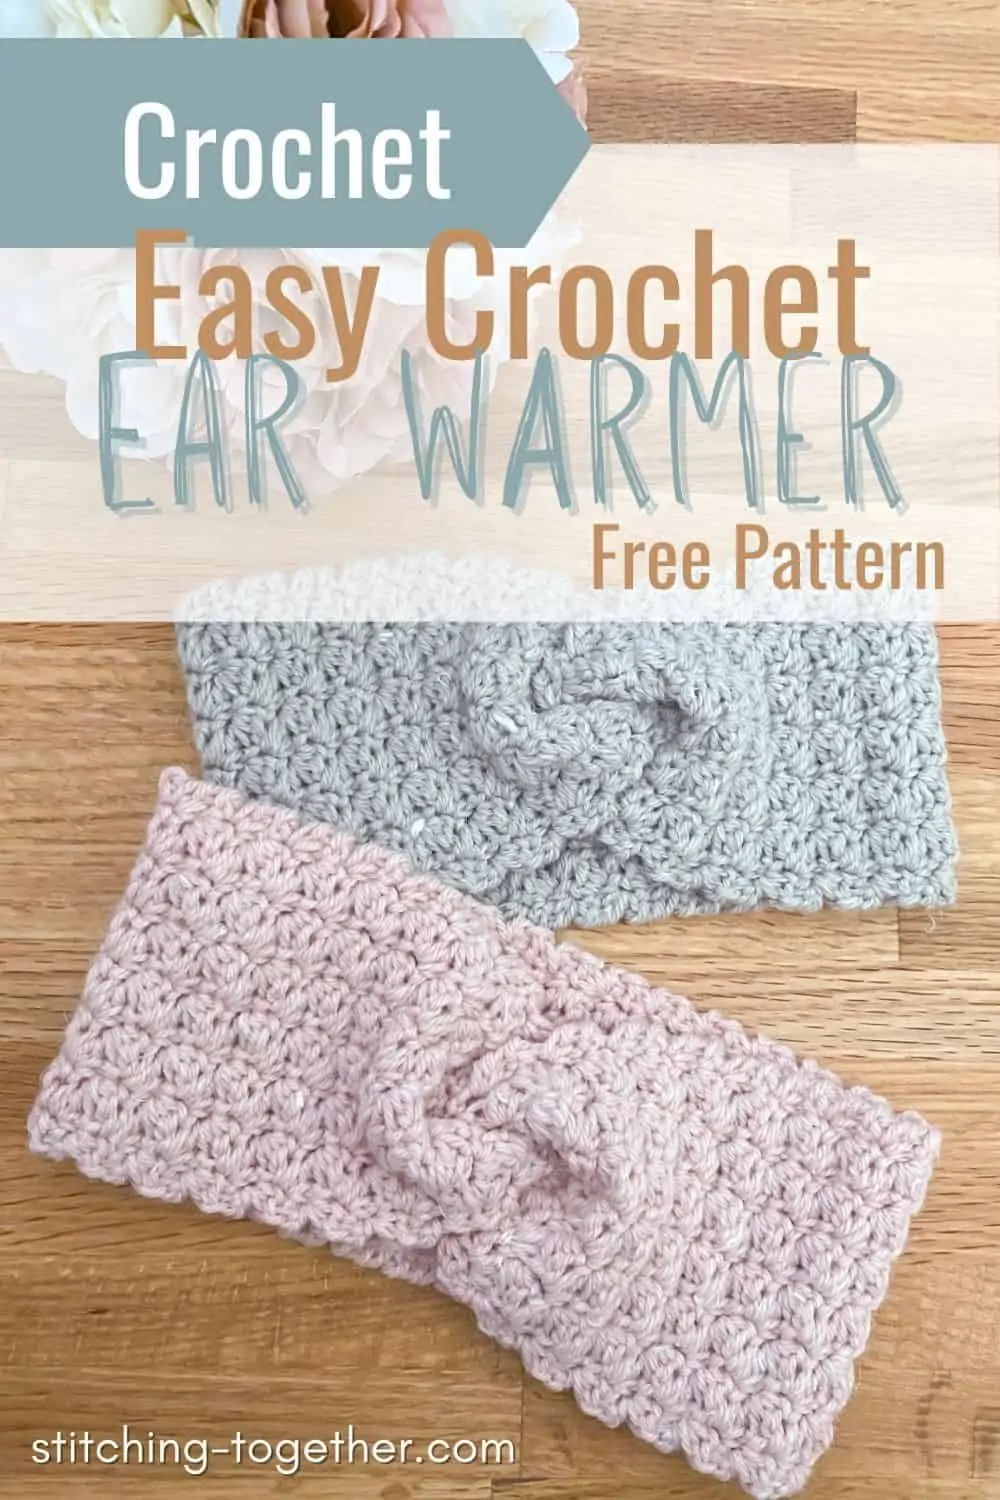 2 crochet ear warmer twist headbands with text reading easy crochet ear warmer free pattern